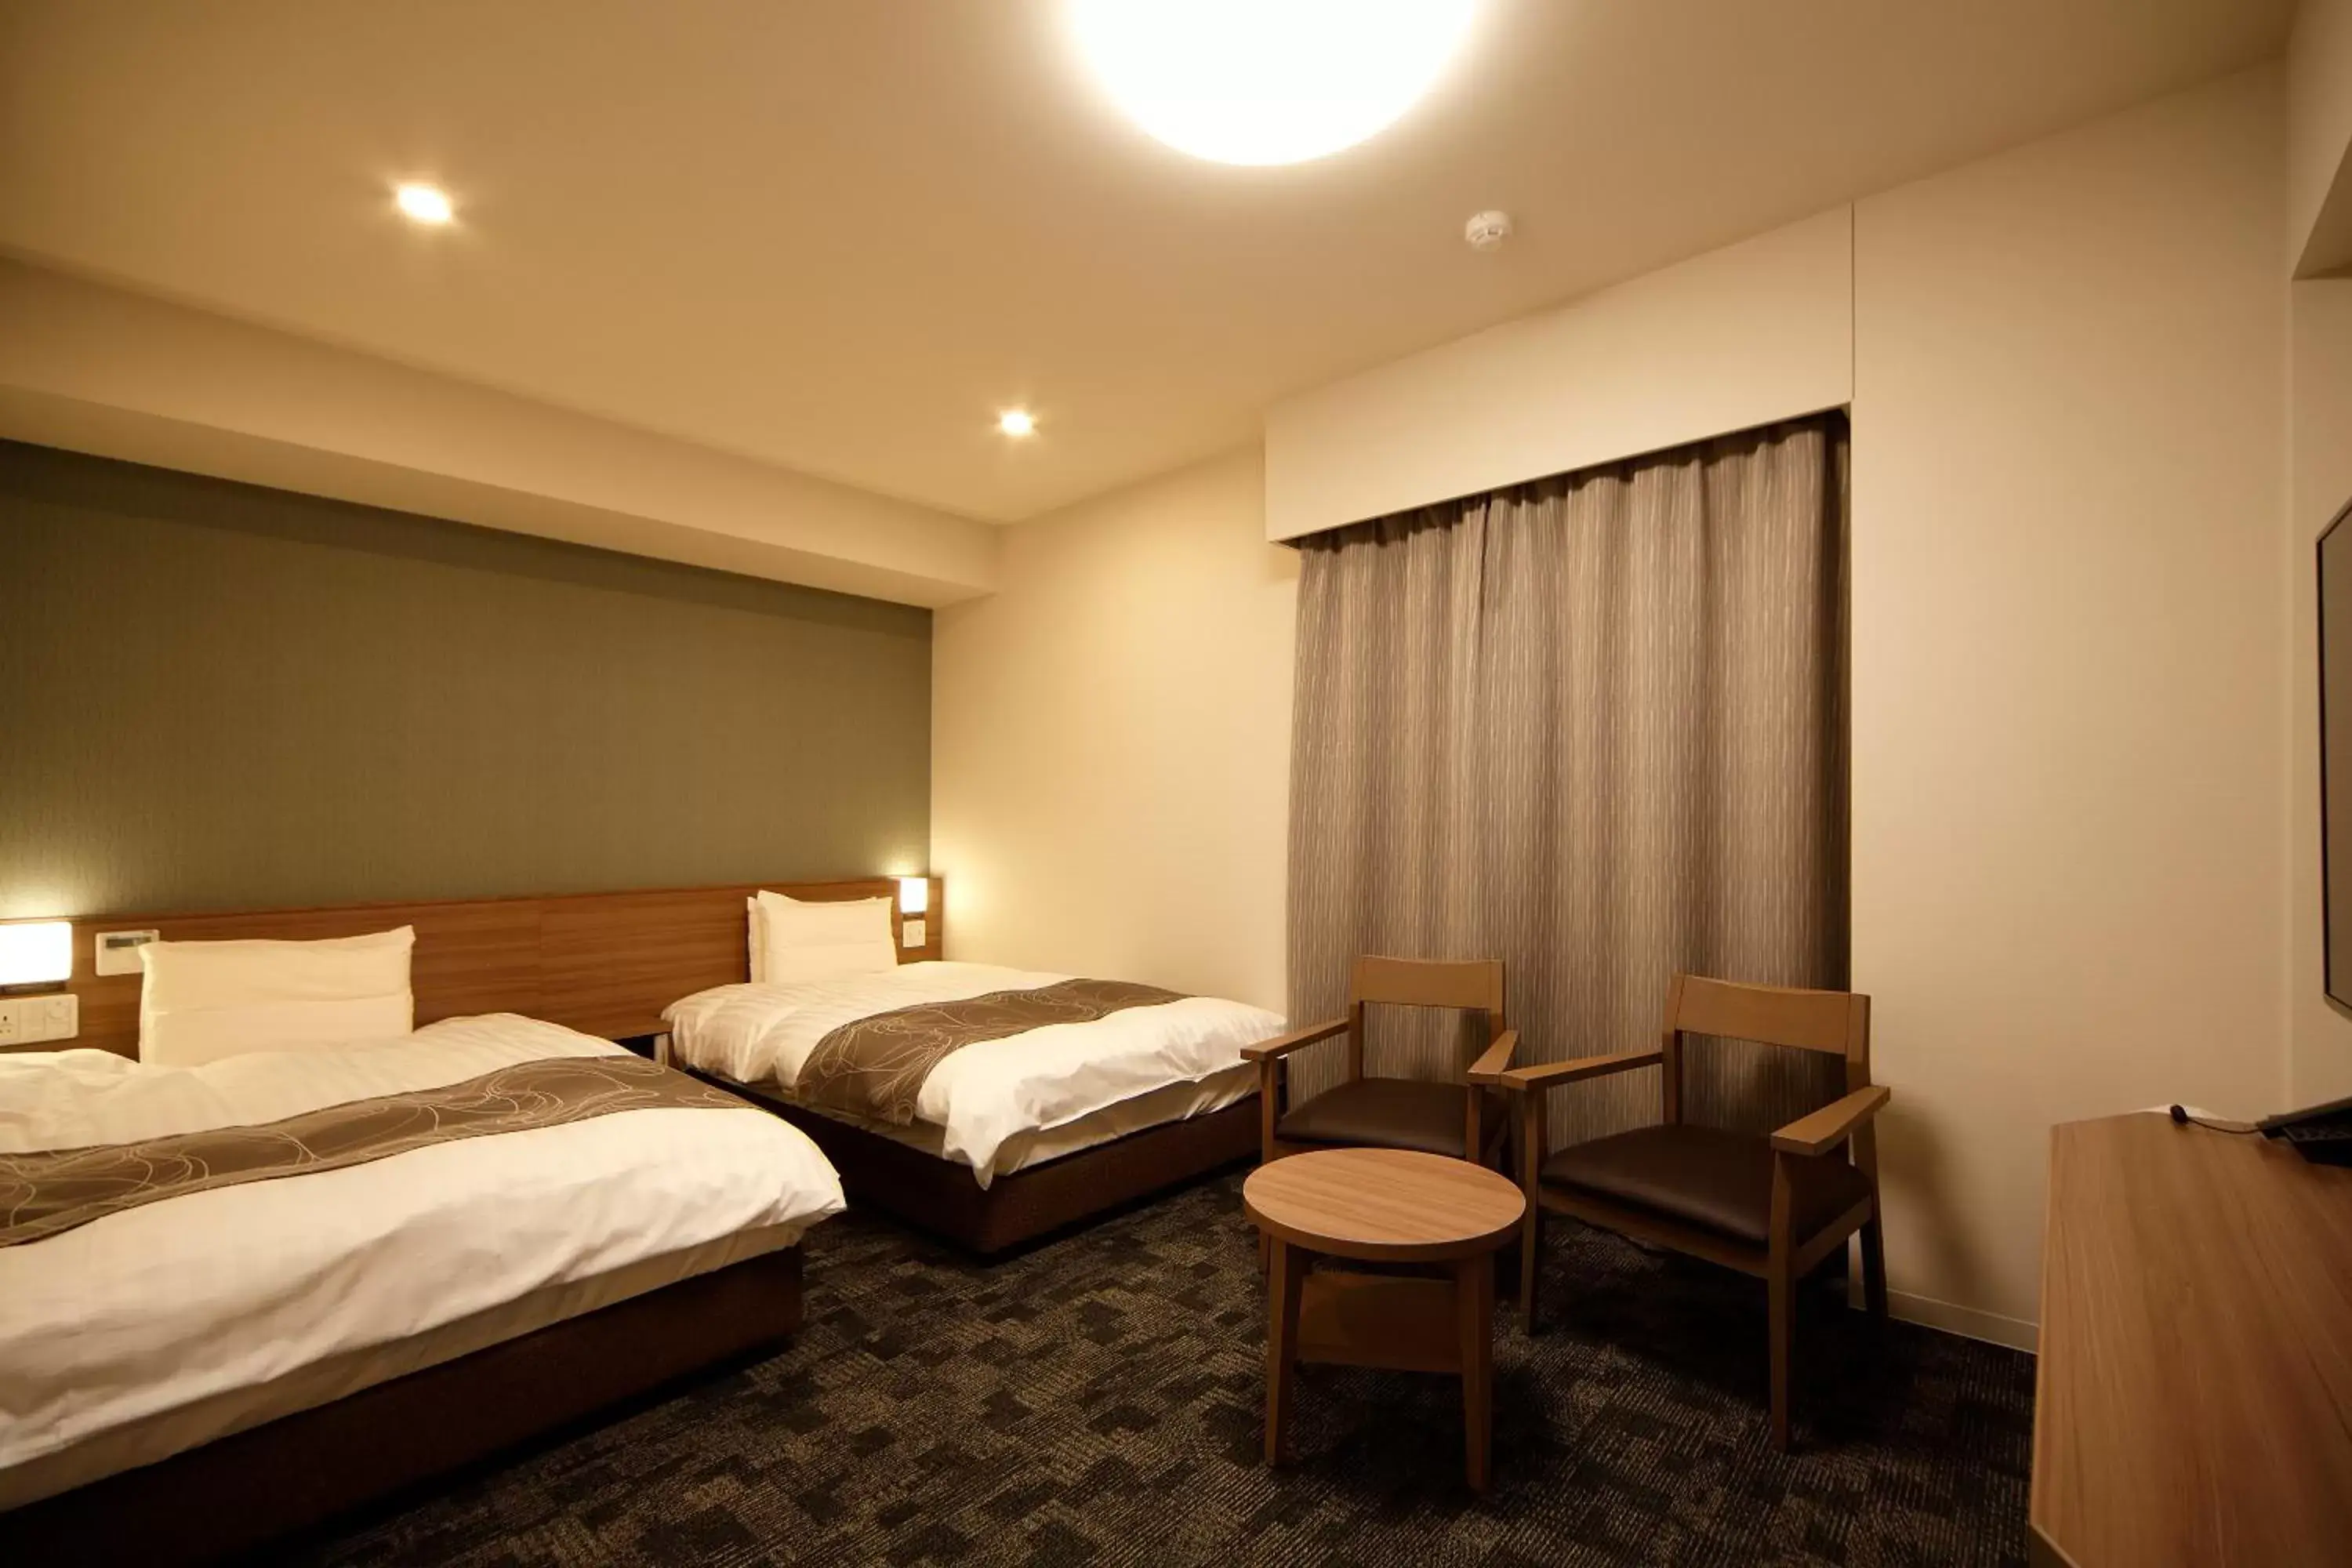 Bedroom, Room Photo in Dormy Inn Nagano